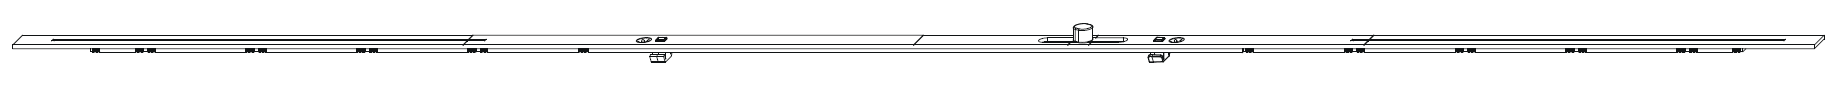 MAICO -  Prolunga BILICO bilico orizzontale per cremonese - dimensioni 1250 - hbb 801 - 1250 - lbb 801 - 1250